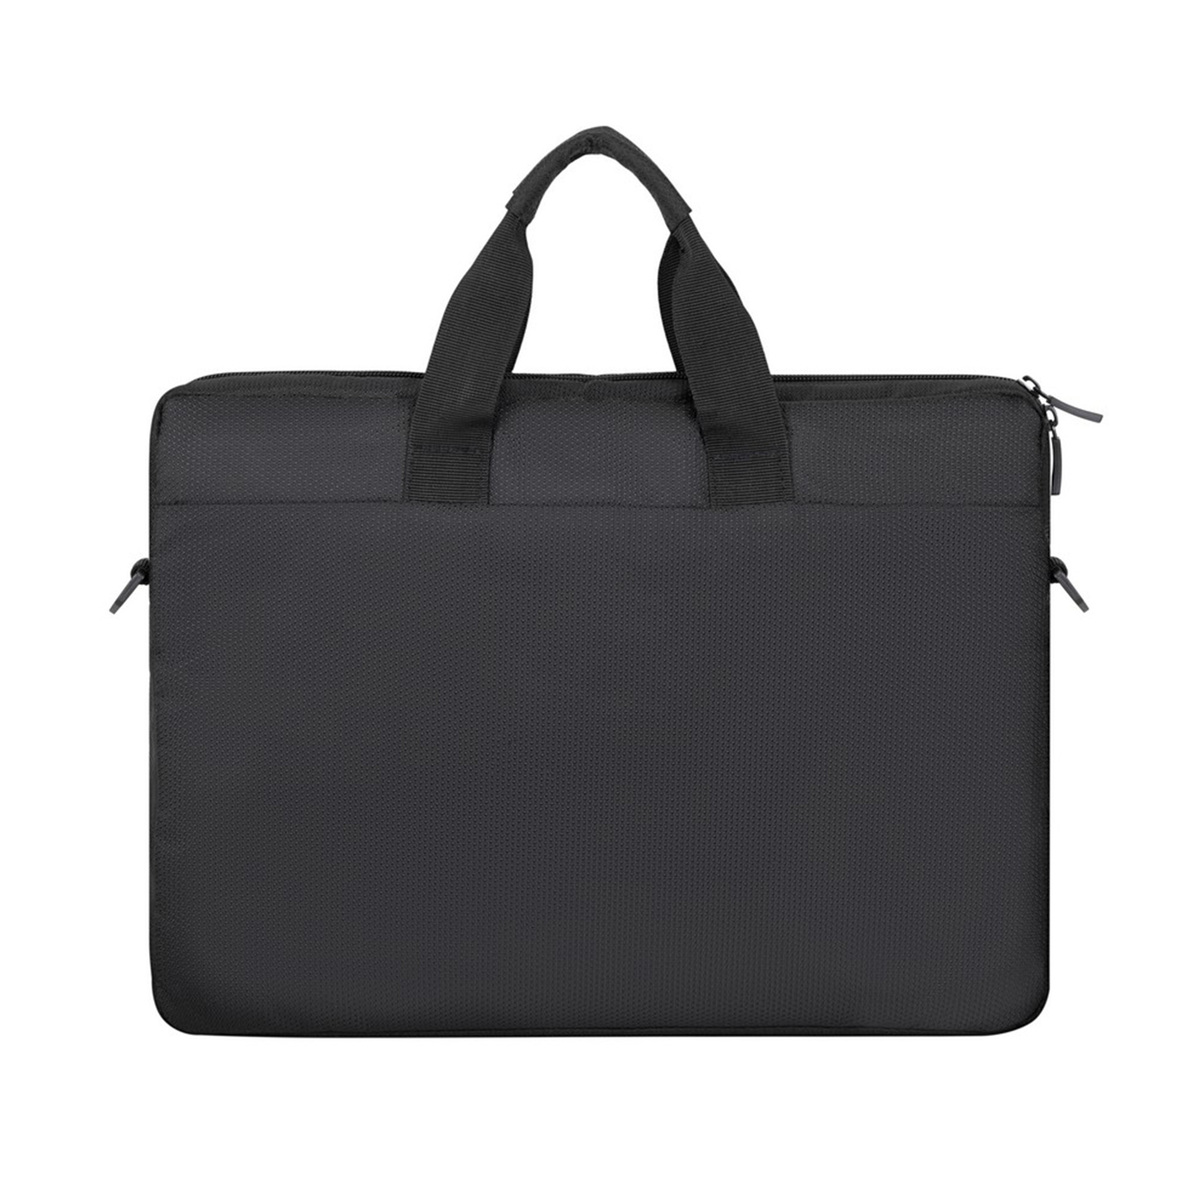 Rivacase Laptop shoulder bag 15.6" -8035,Black